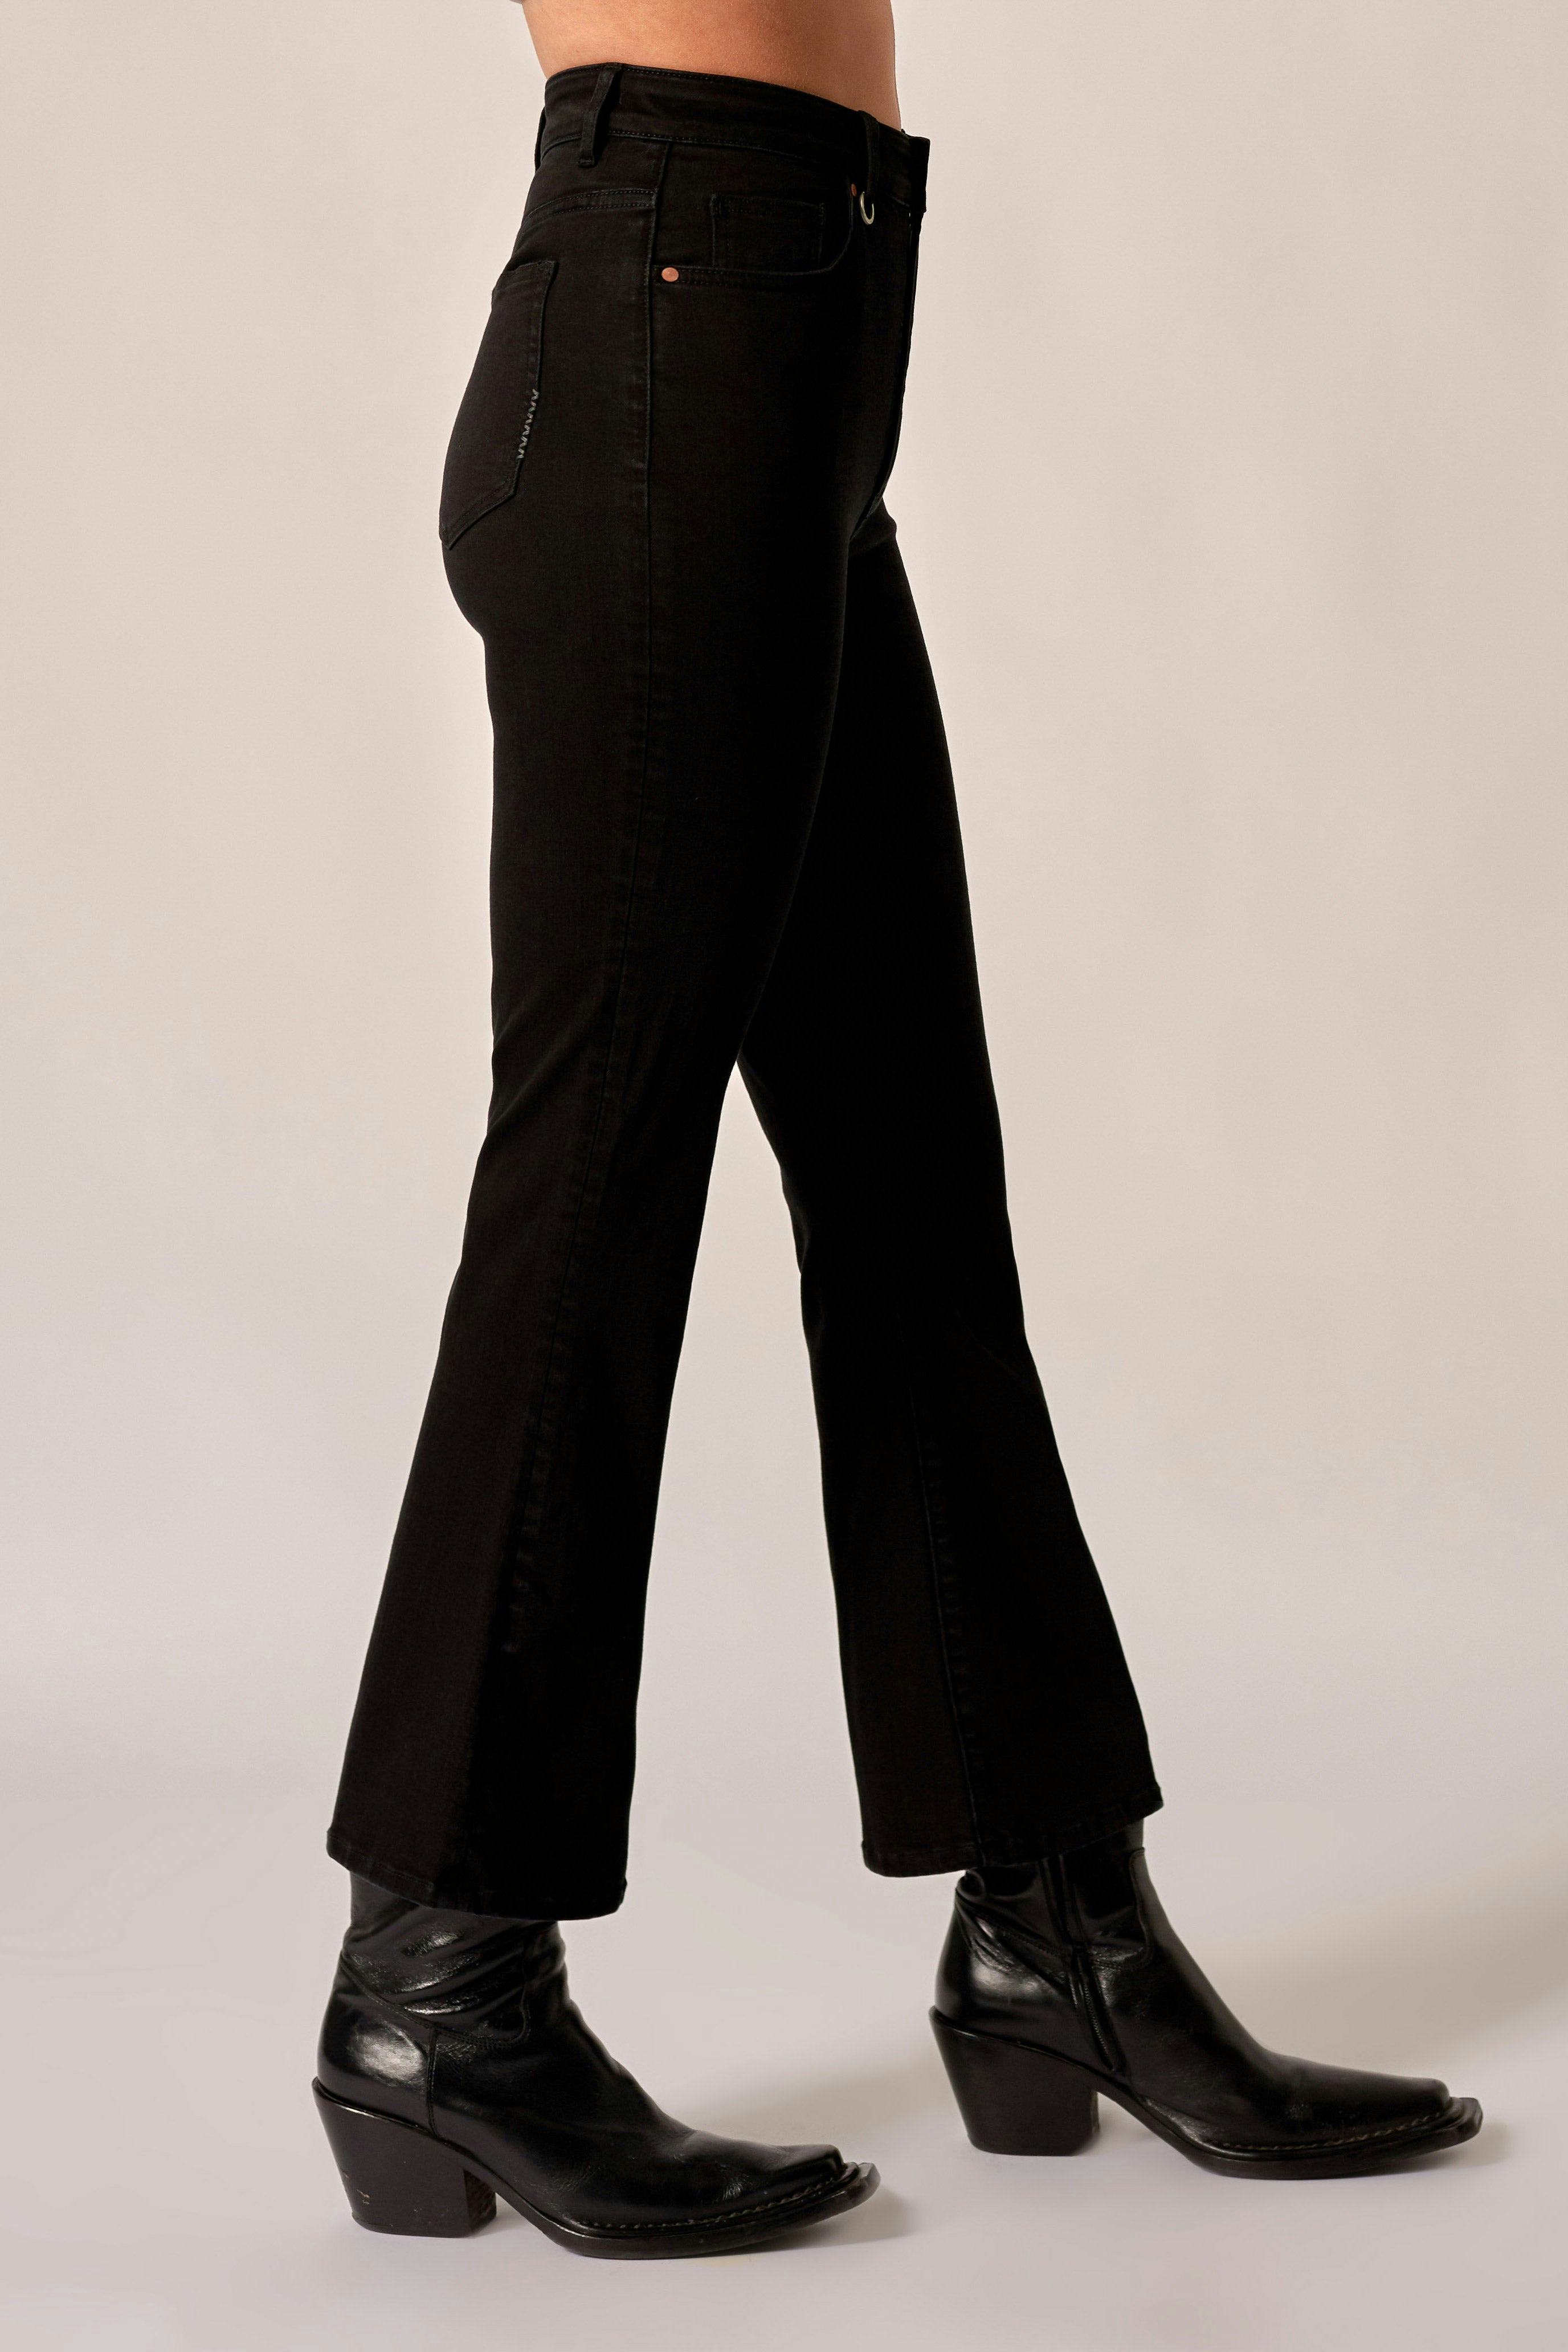 Debbie Crop - Black Suede Neuw dark black womens-jeans 